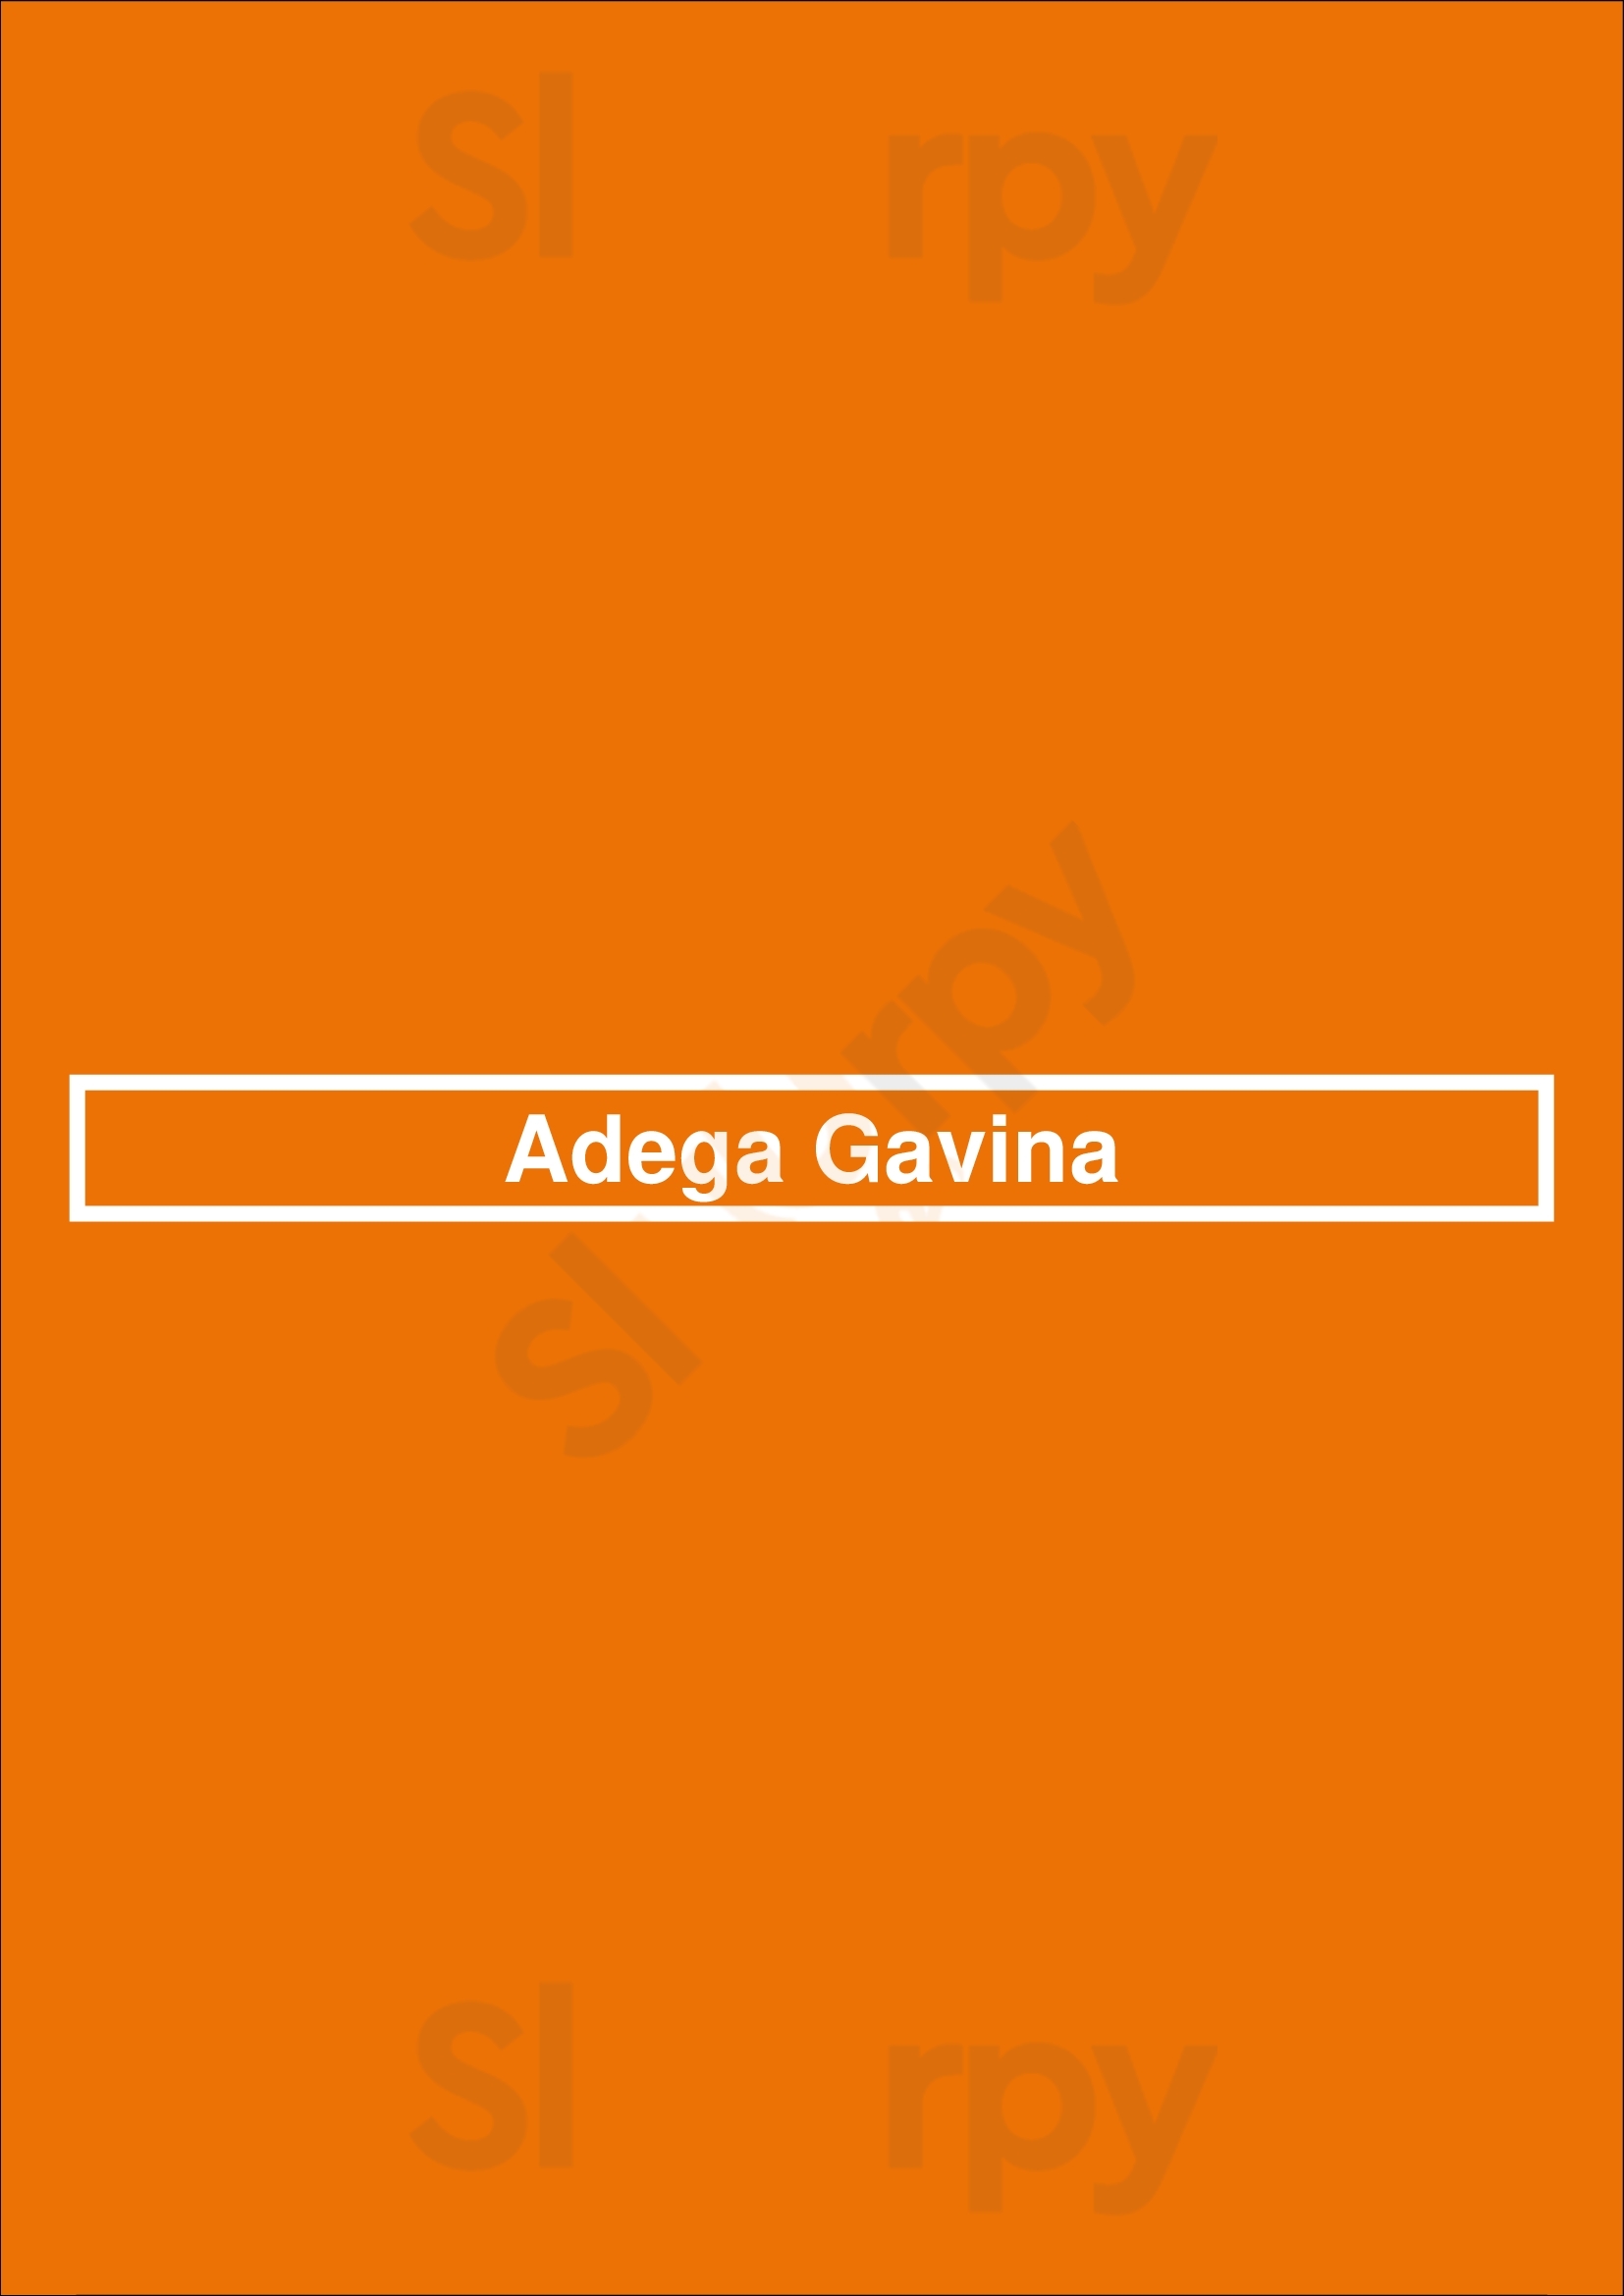 Adega Gavina Vila do Conde Menu - 1